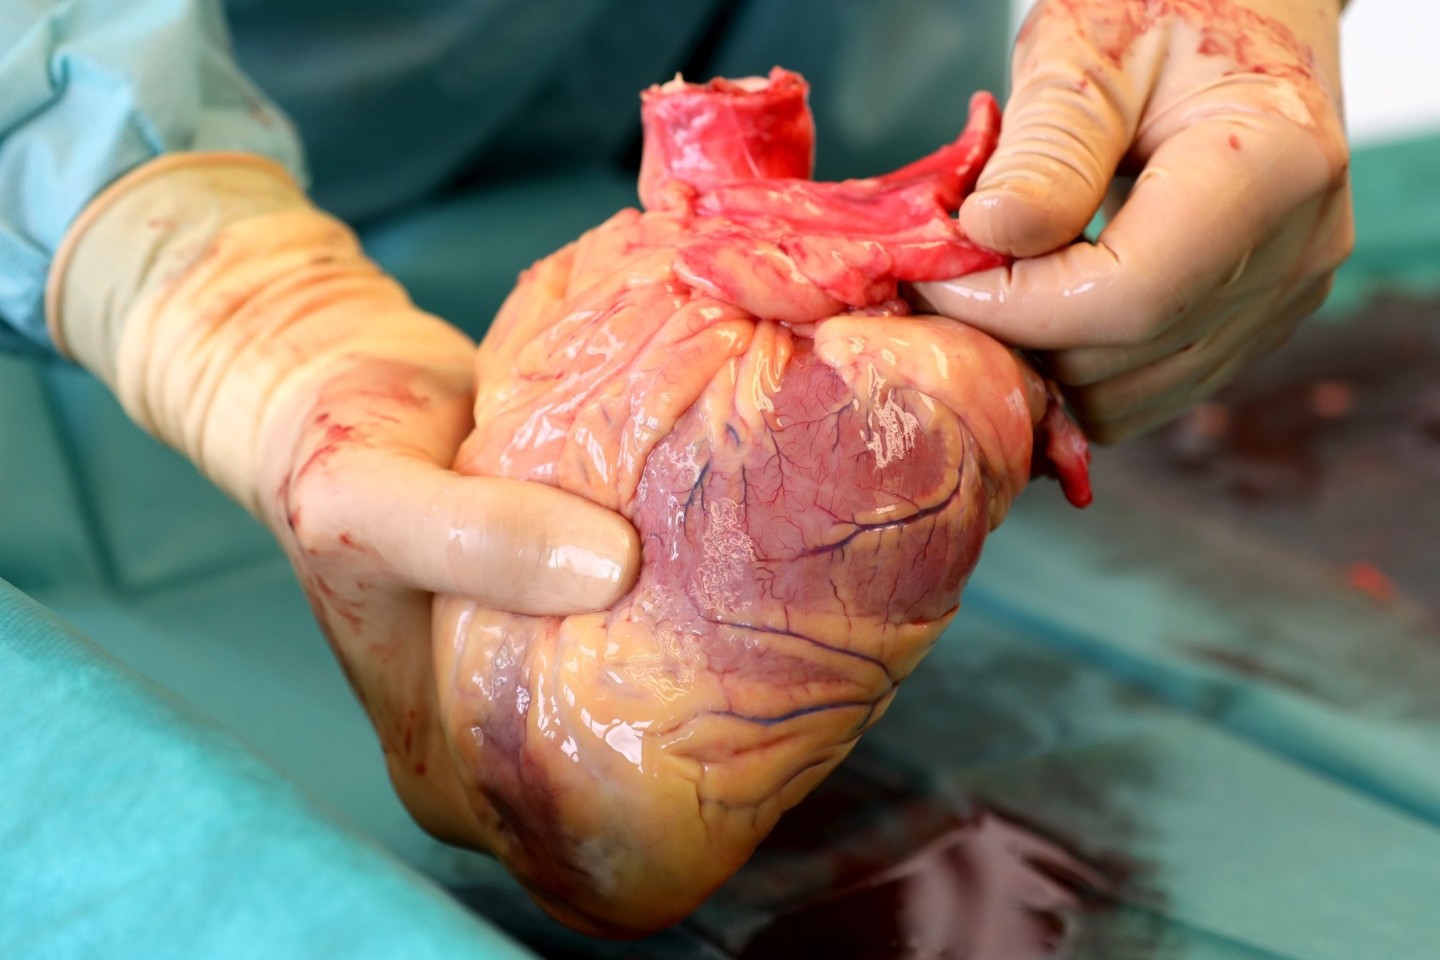 Ein Transplantationsmediziner hält das Herz eines Verstorbenen in den Händen, das kurz zuvor entnommen wurde.